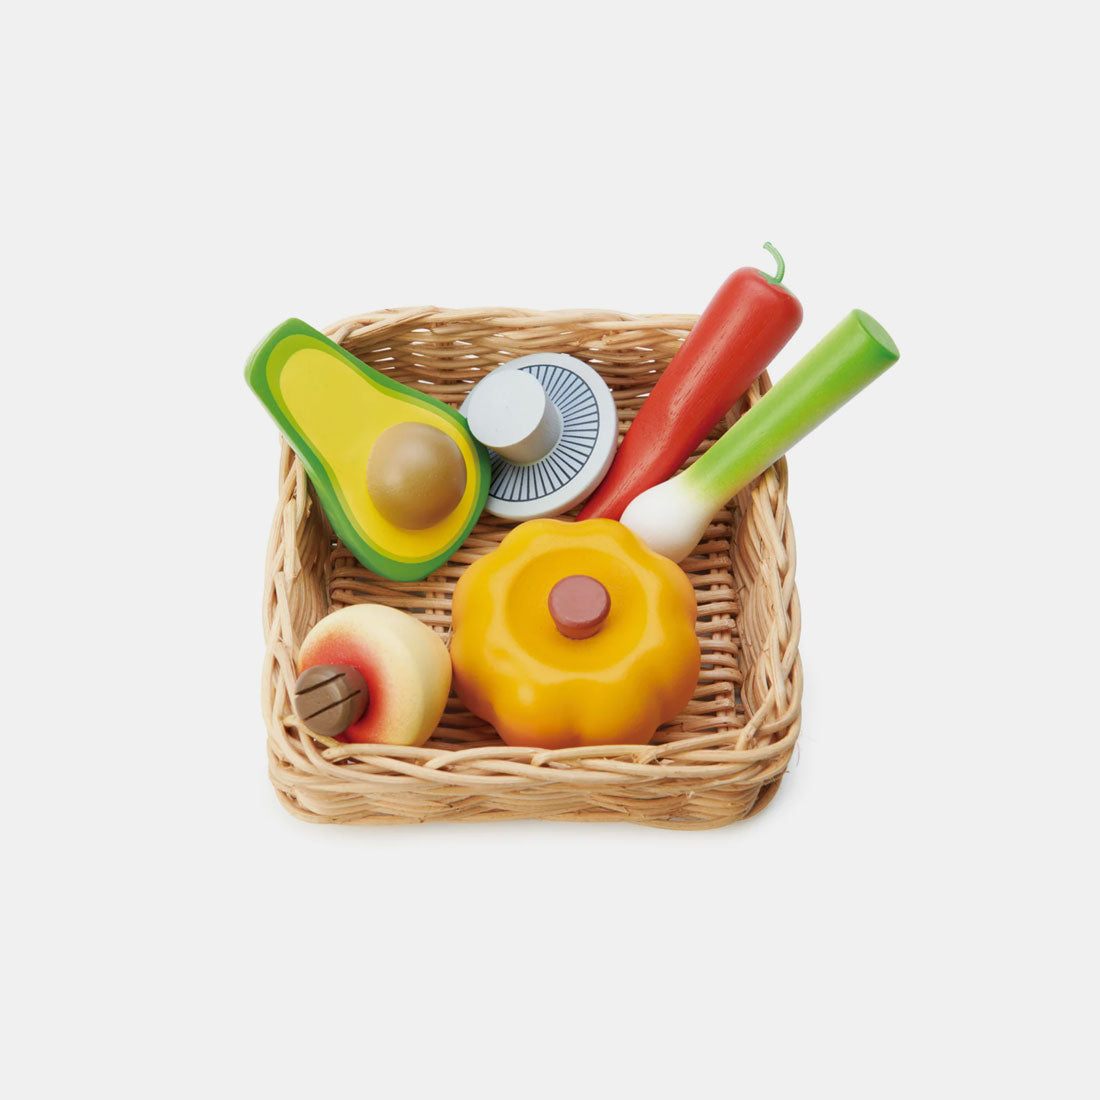 Wooden Play Food - Veggie Basket